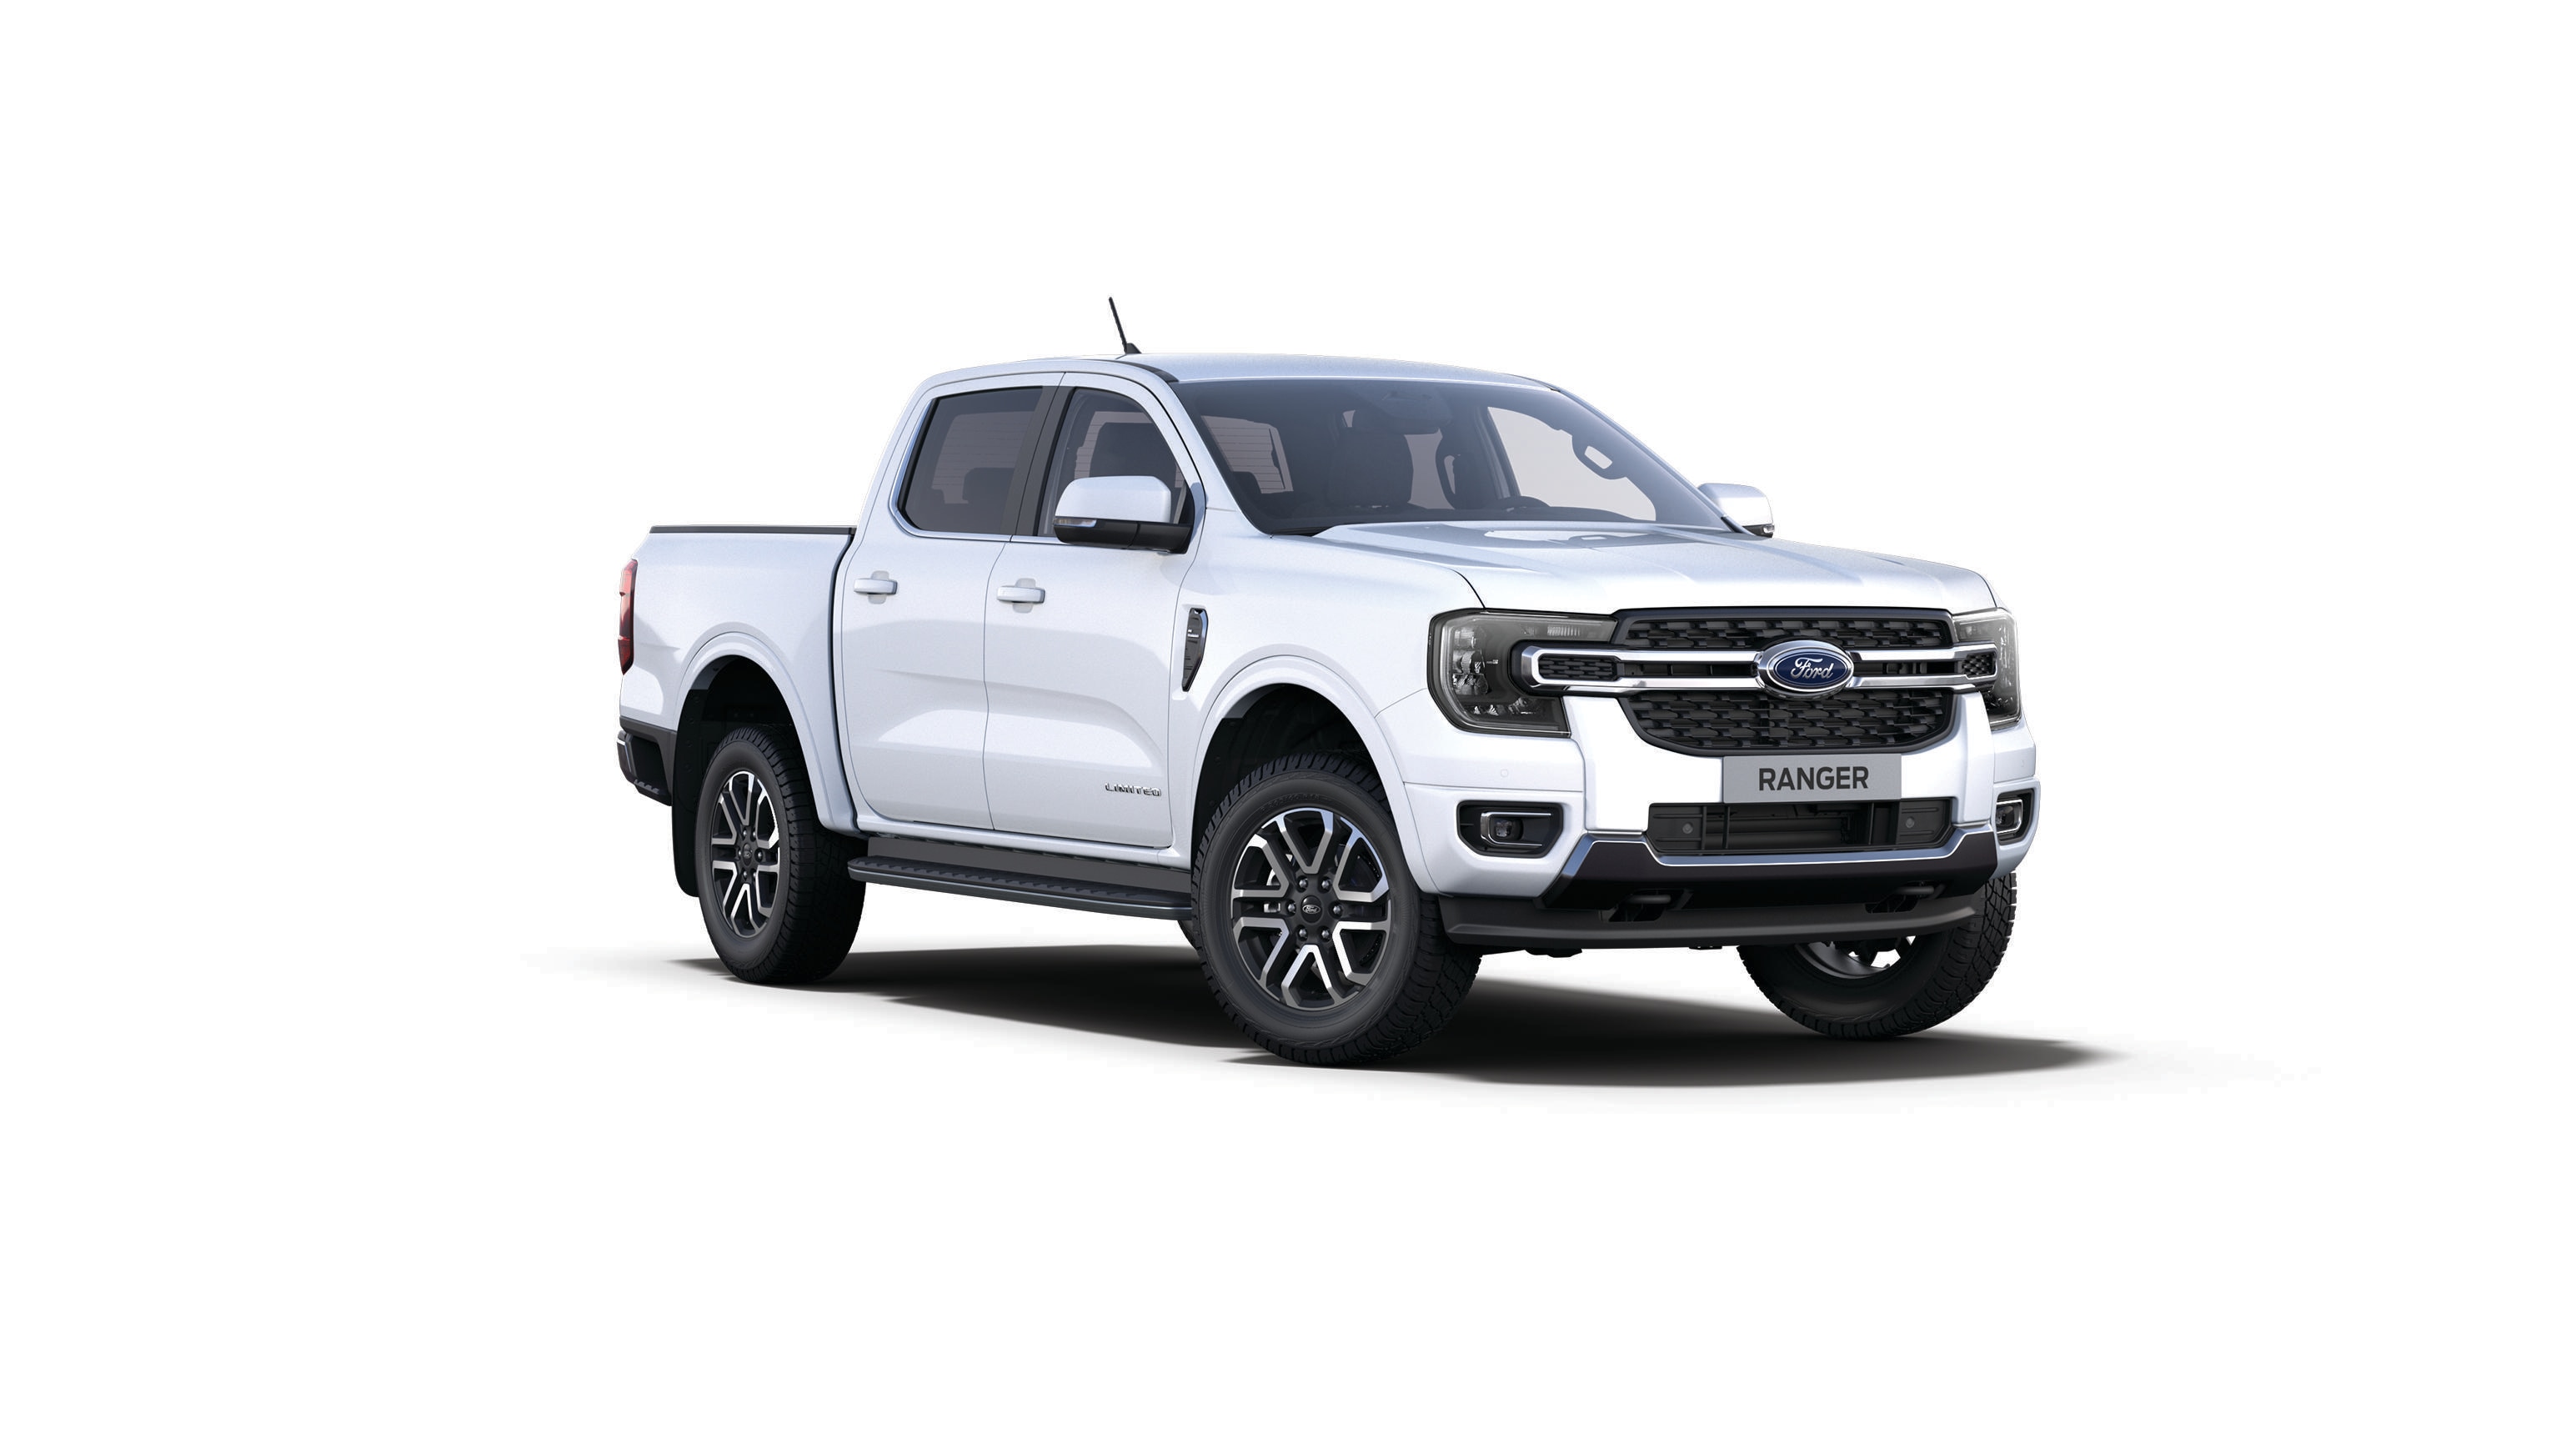 Ford Ranger Limited in Weiß, Dreiviertelansicht